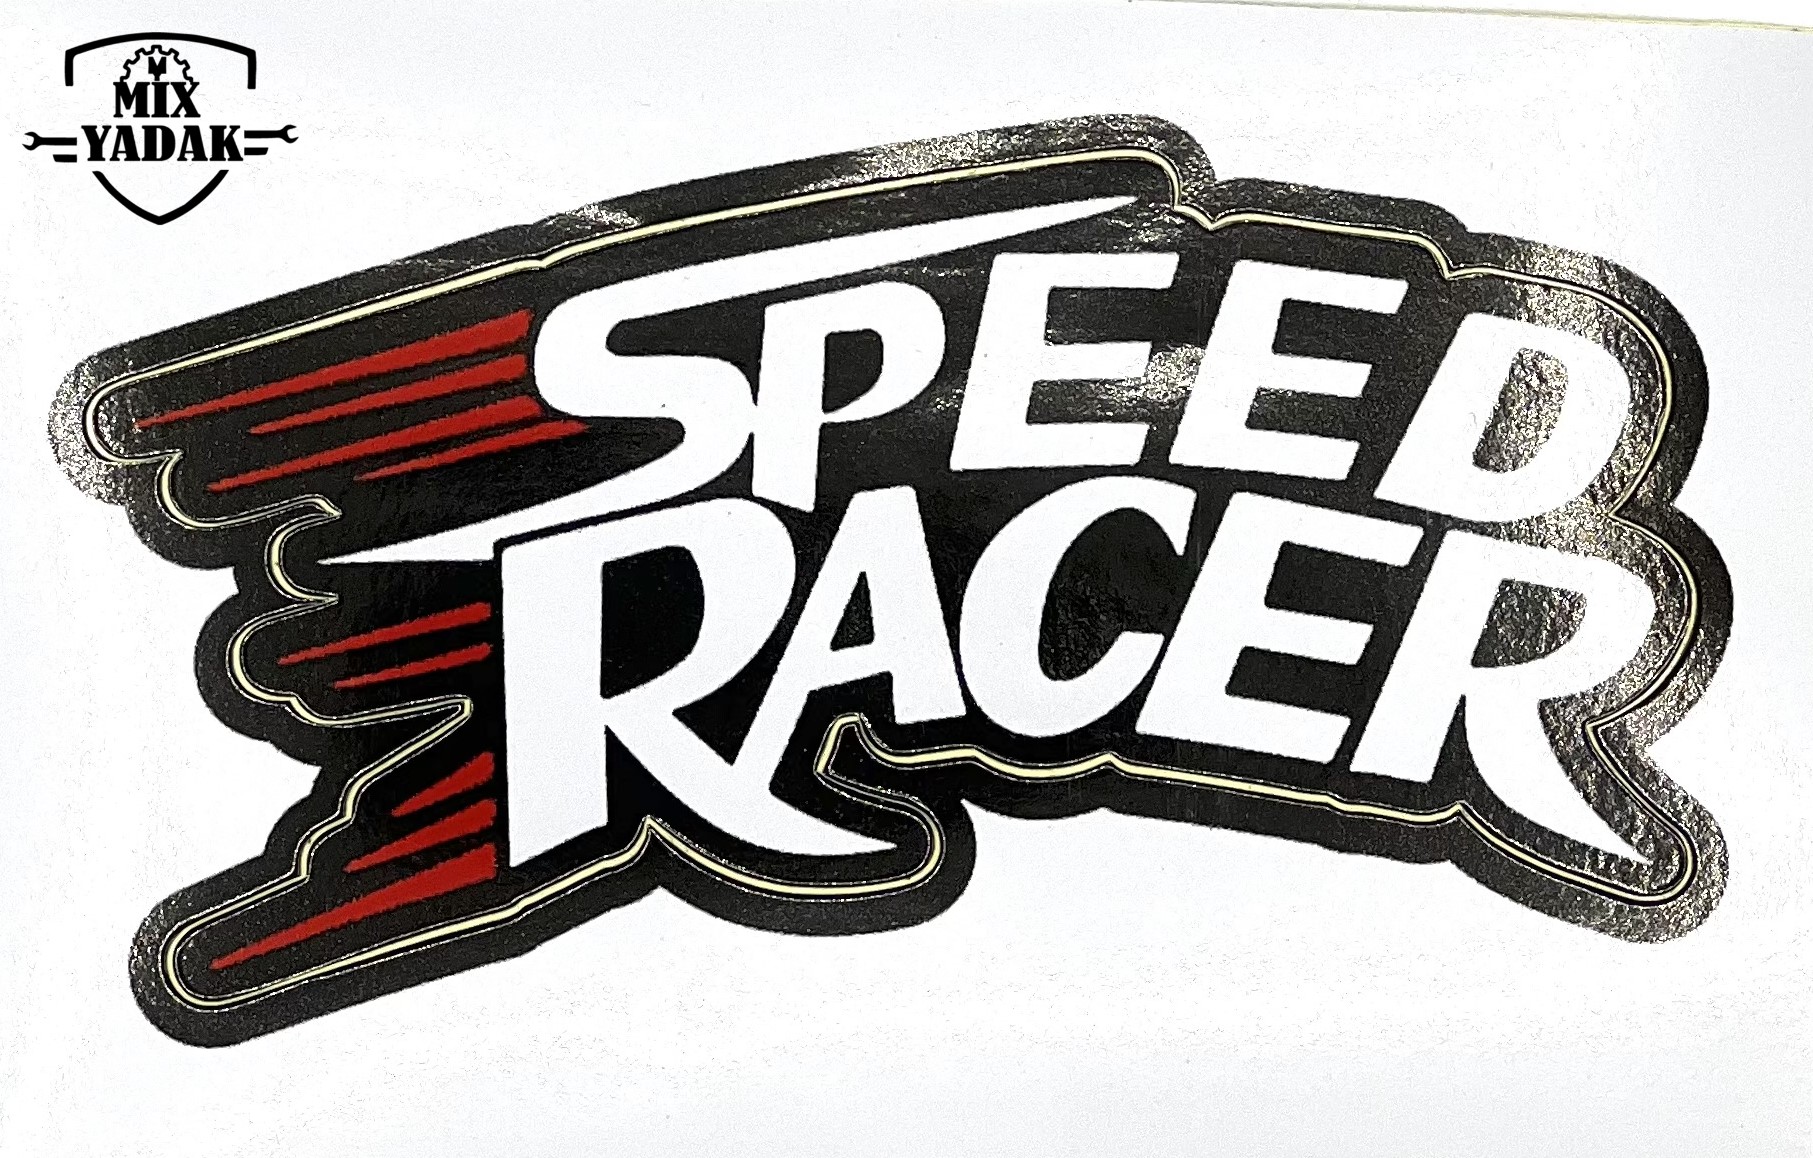 تصویر از برچسب SPEED RACER B2